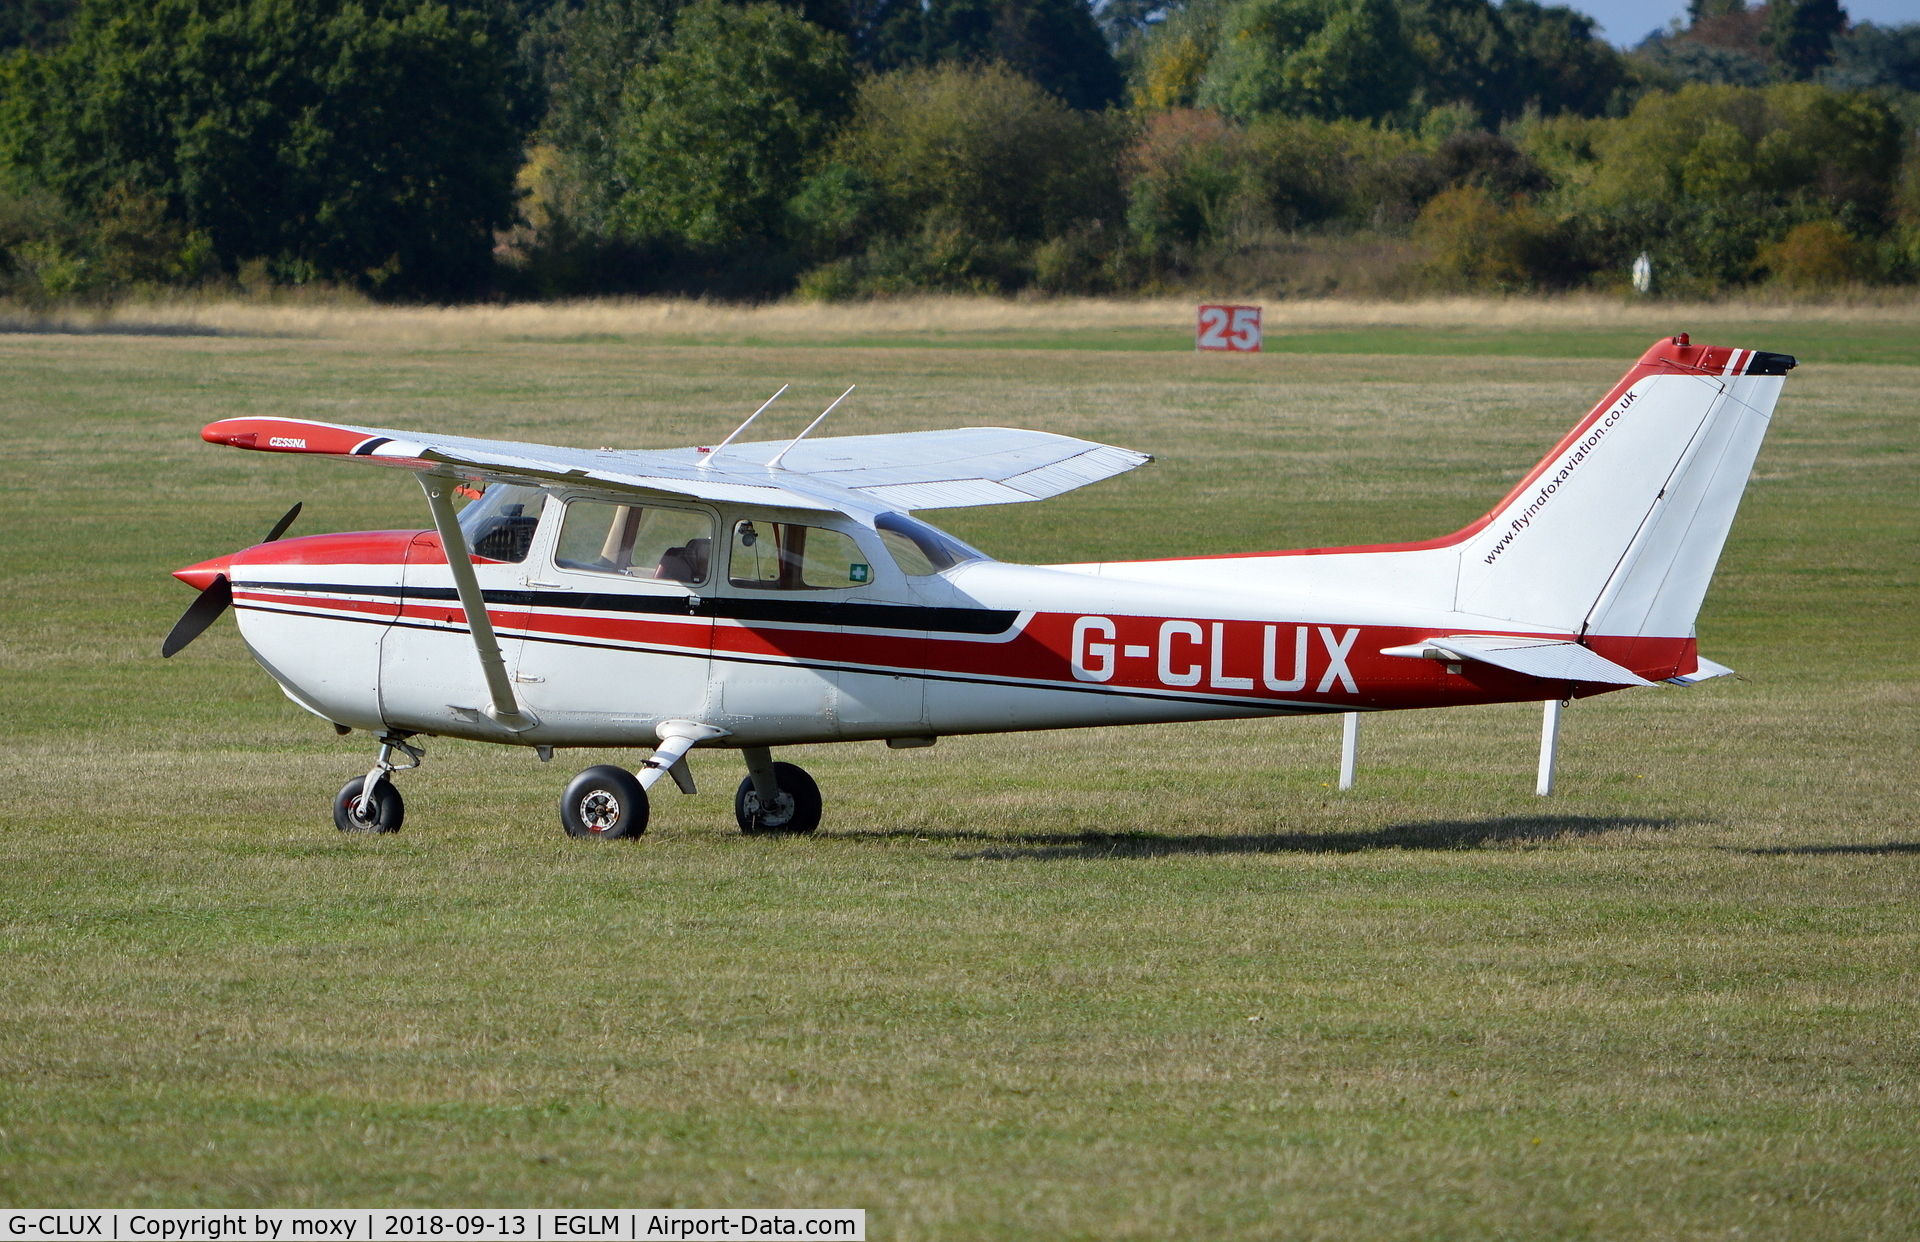 G-CLUX, 1980 Reims F172N Skyhawk C/N 1996, Reims Cessna F172N Skyhawk at White Waltham. Ex PH-AYG